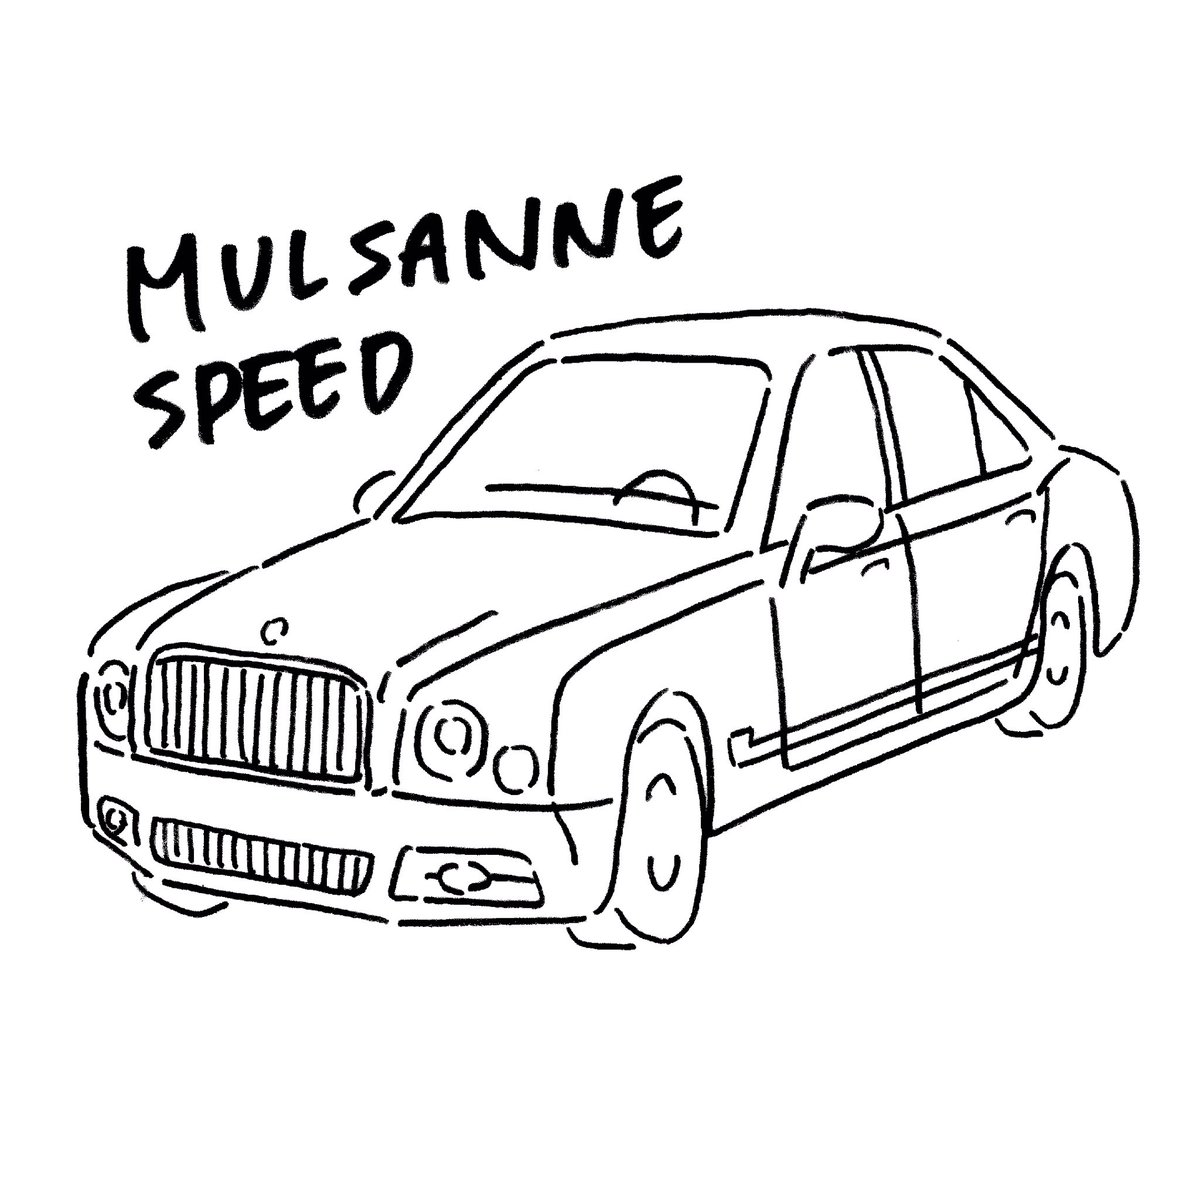 Twitter 上的 みけねこちーち 高級車を描いたんだ 見てくれ ついでに Rtで私を有名にしてください Mulsanne Mulsannespeed Car くるま 車 かわいい かわいい車 Illust イラスト 手描きイラスト 絵描きさんとつながりたい 絵師さんと繋がりたい